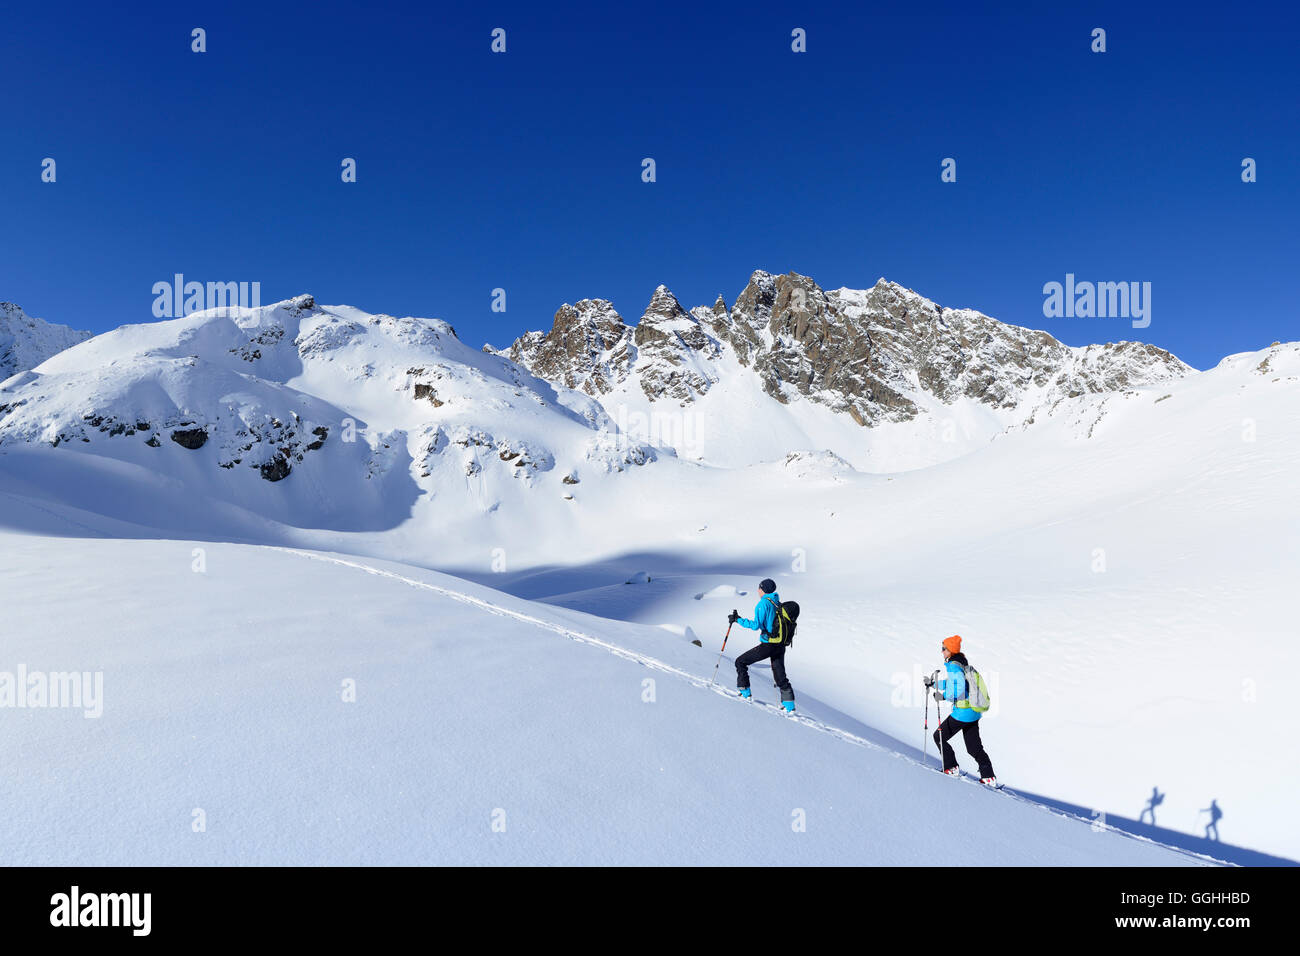 Two female backcountry skiers ascending to Kuhscheibe, Stubai Alps, Tyrol, Austria Stock Photo